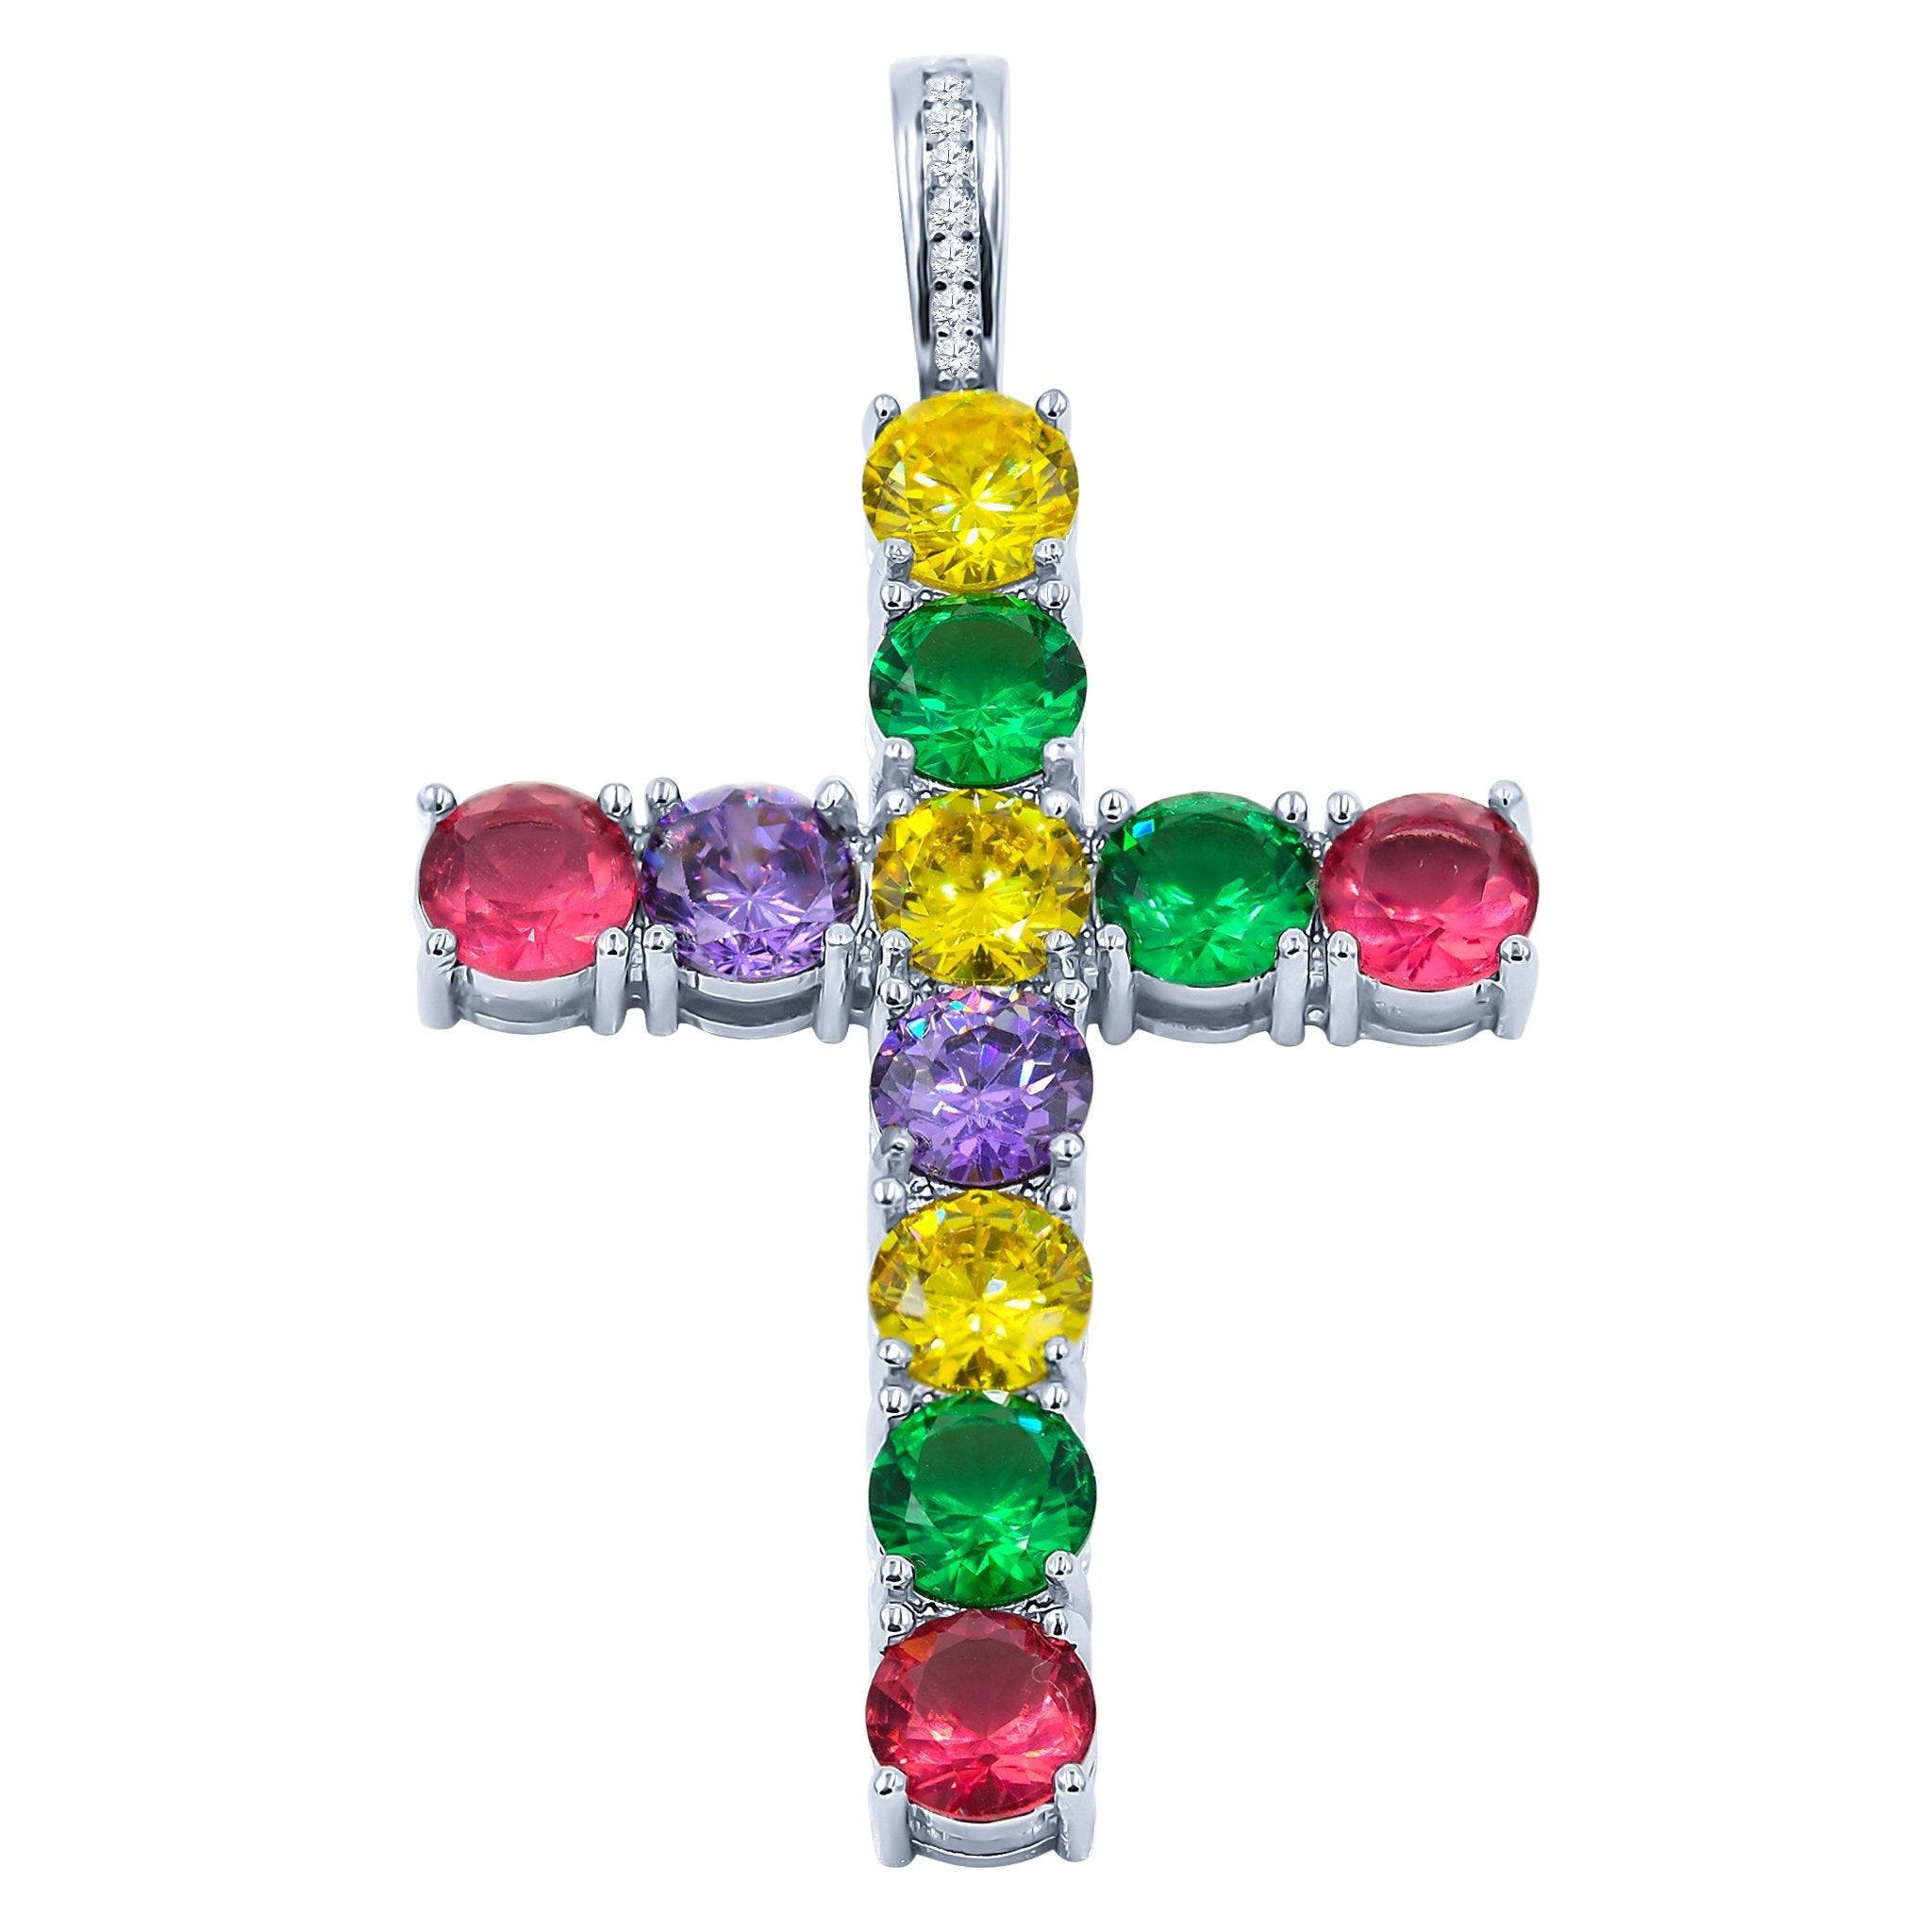 Bling Master Rainbow CZ Brass Pendant | High Quality Jewelry Piece Bijou Her